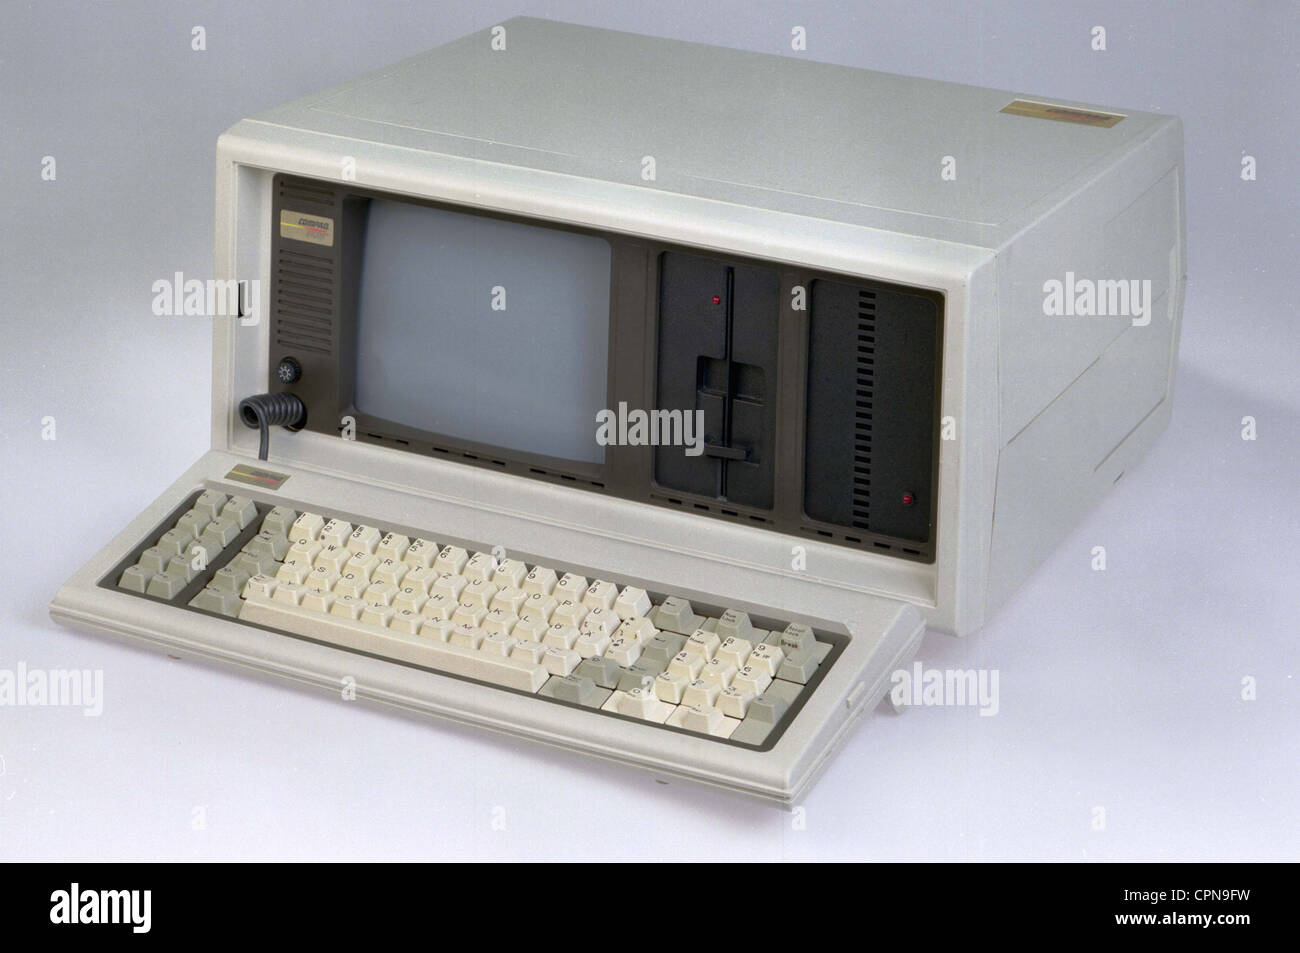 Computer / Elektronik, Computer, Compaq Plus, tragbarer Computer, erster IBM  PC kompatibler Computer, mit MS-DOS, USA, 1983,  zusätzliche-Rechte-Clearences-nicht vorhanden Stockfotografie - Alamy